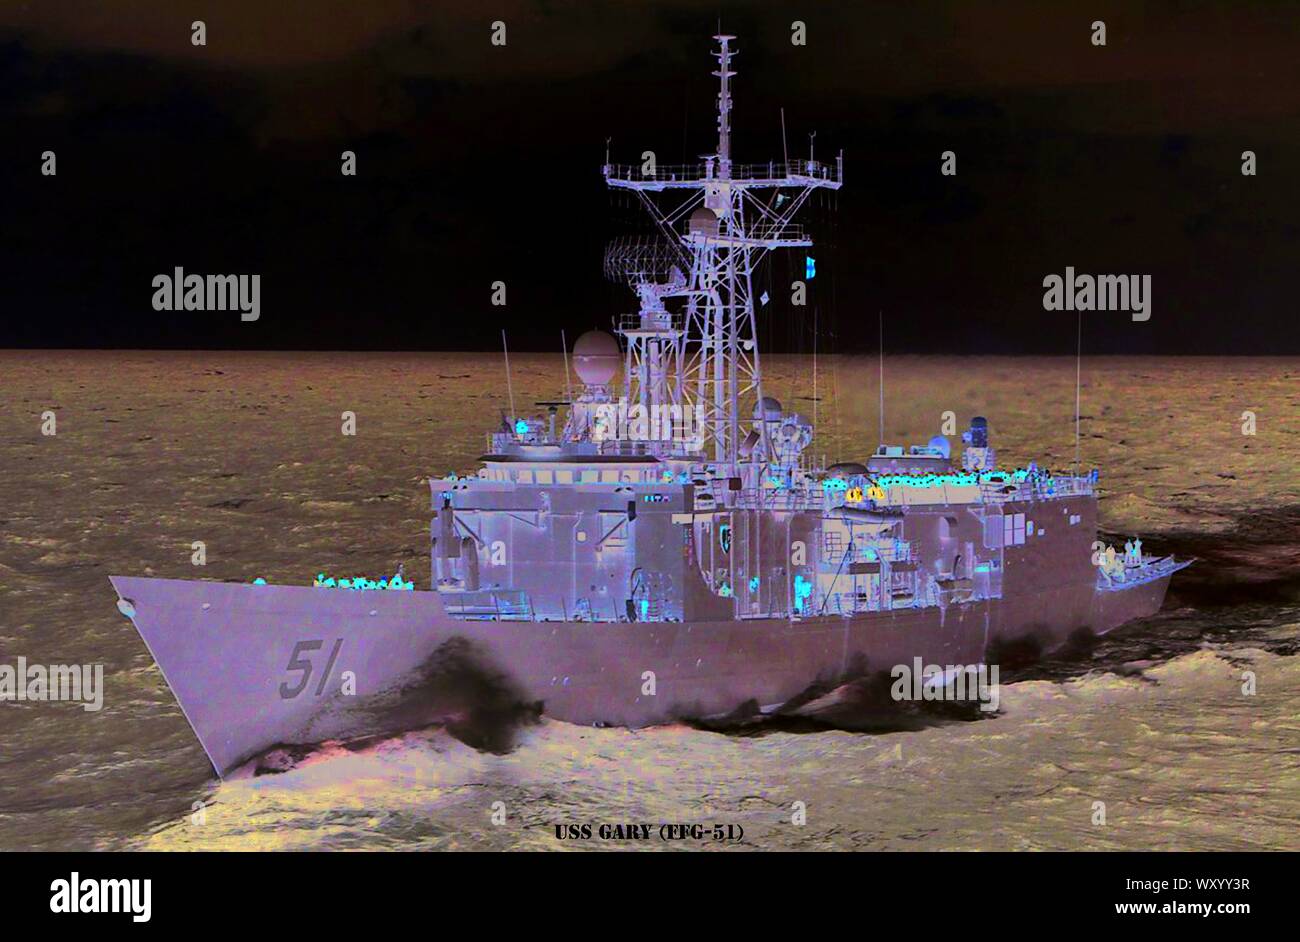 USS GARY (FFG-51) Stock Photo